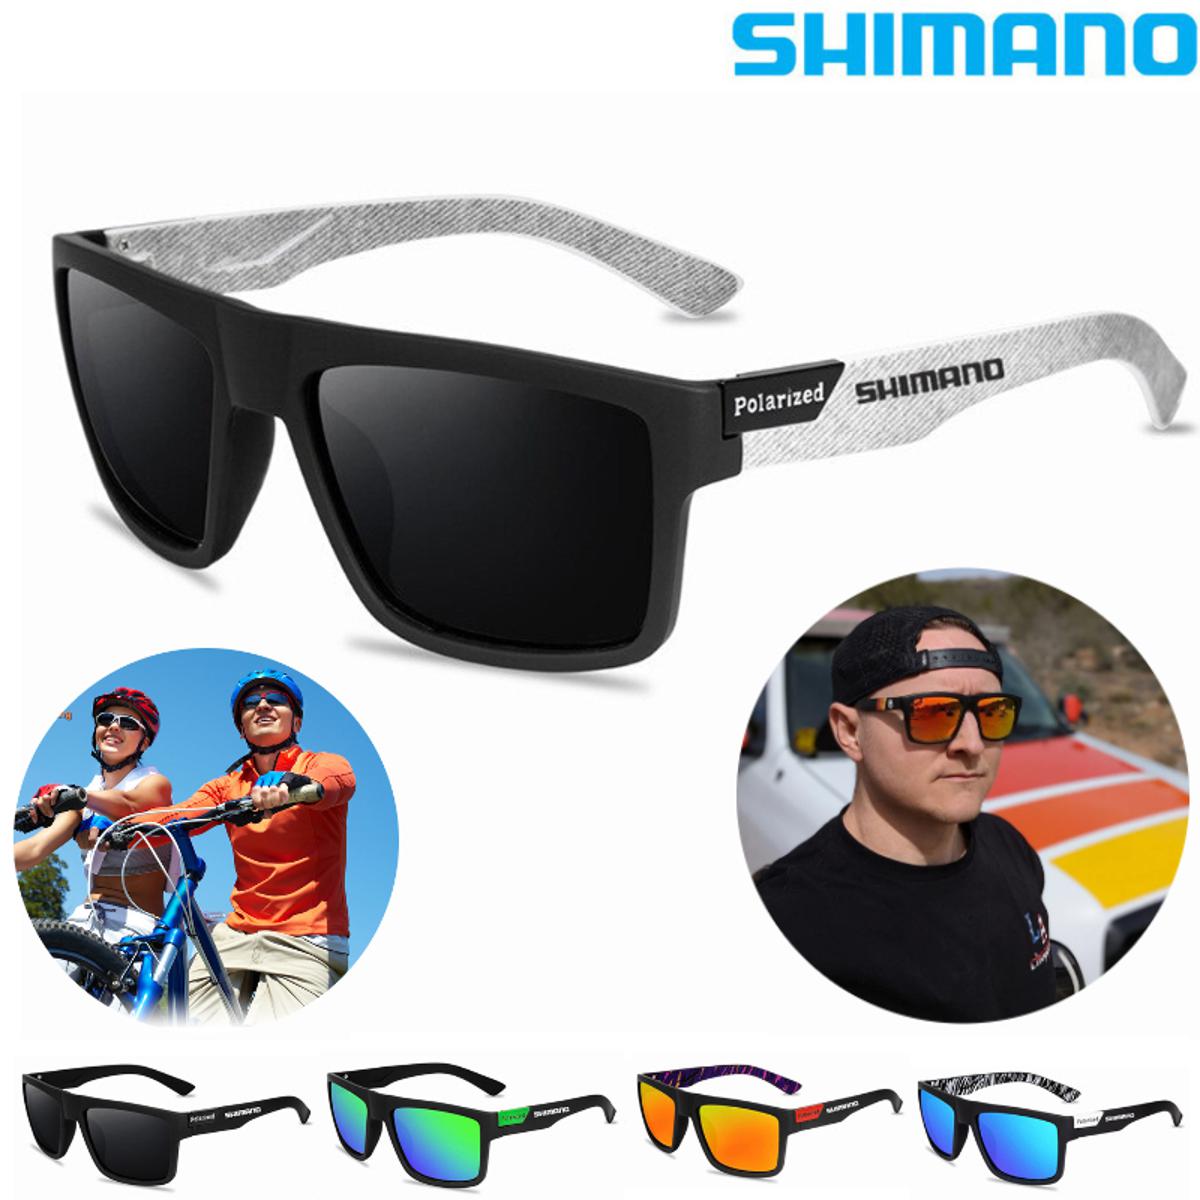 【Footprint】 UV400 Shimano Cycling Sunglasses Men Fashion MTB Racing Glasses  Cycling Shades Outdoor Sports Sun Protection Fishing Glasses